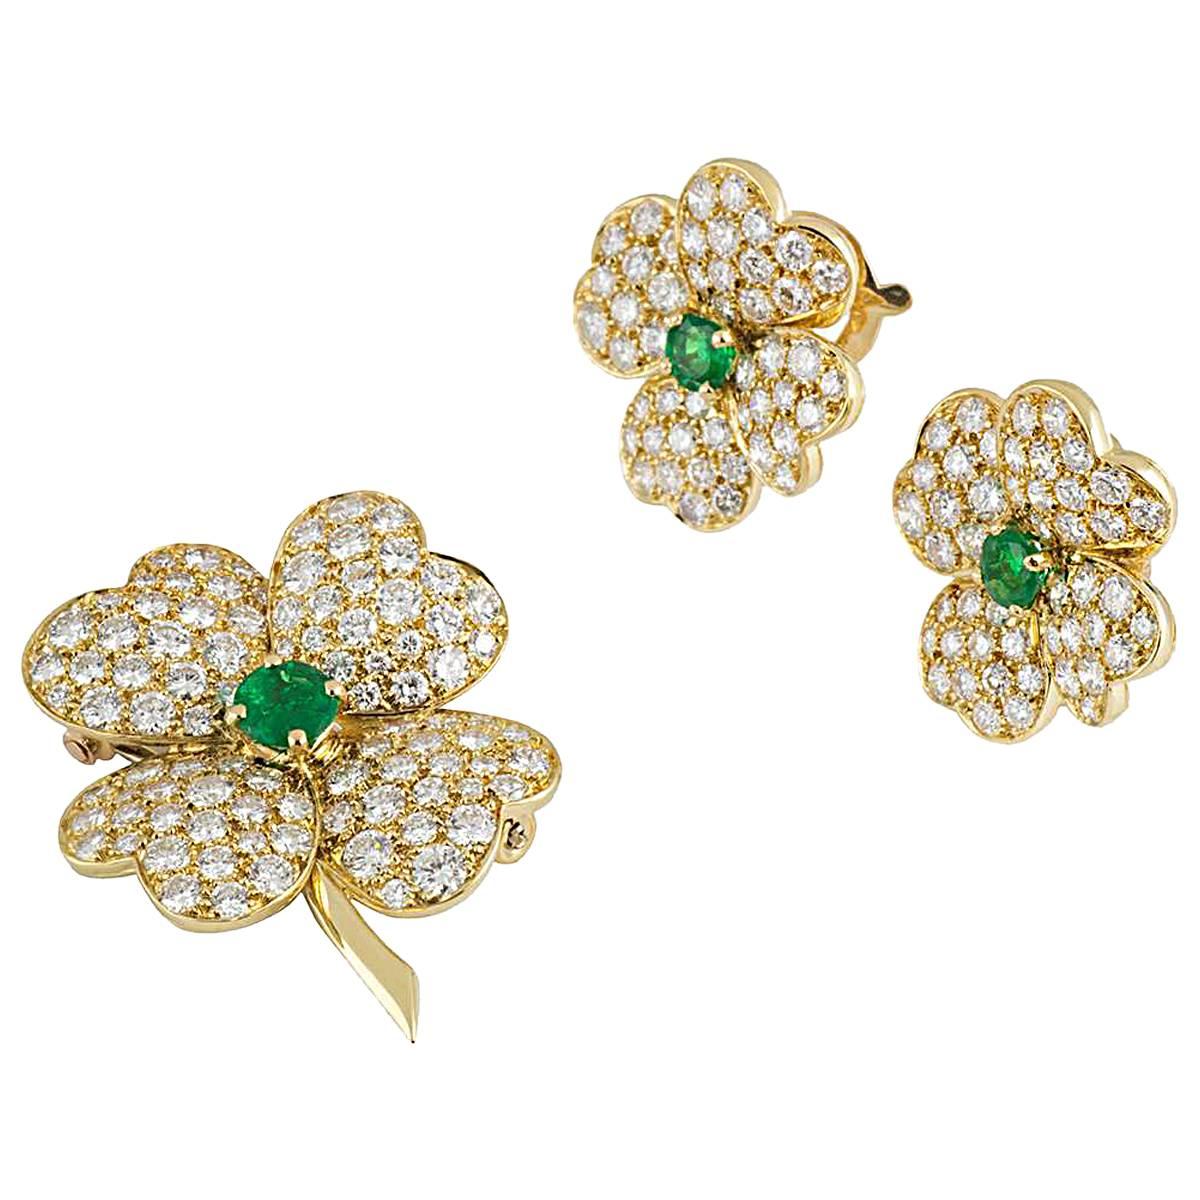 Van Cleef & Arpels Cosmos Diamond Emerald Brooch and Earrings